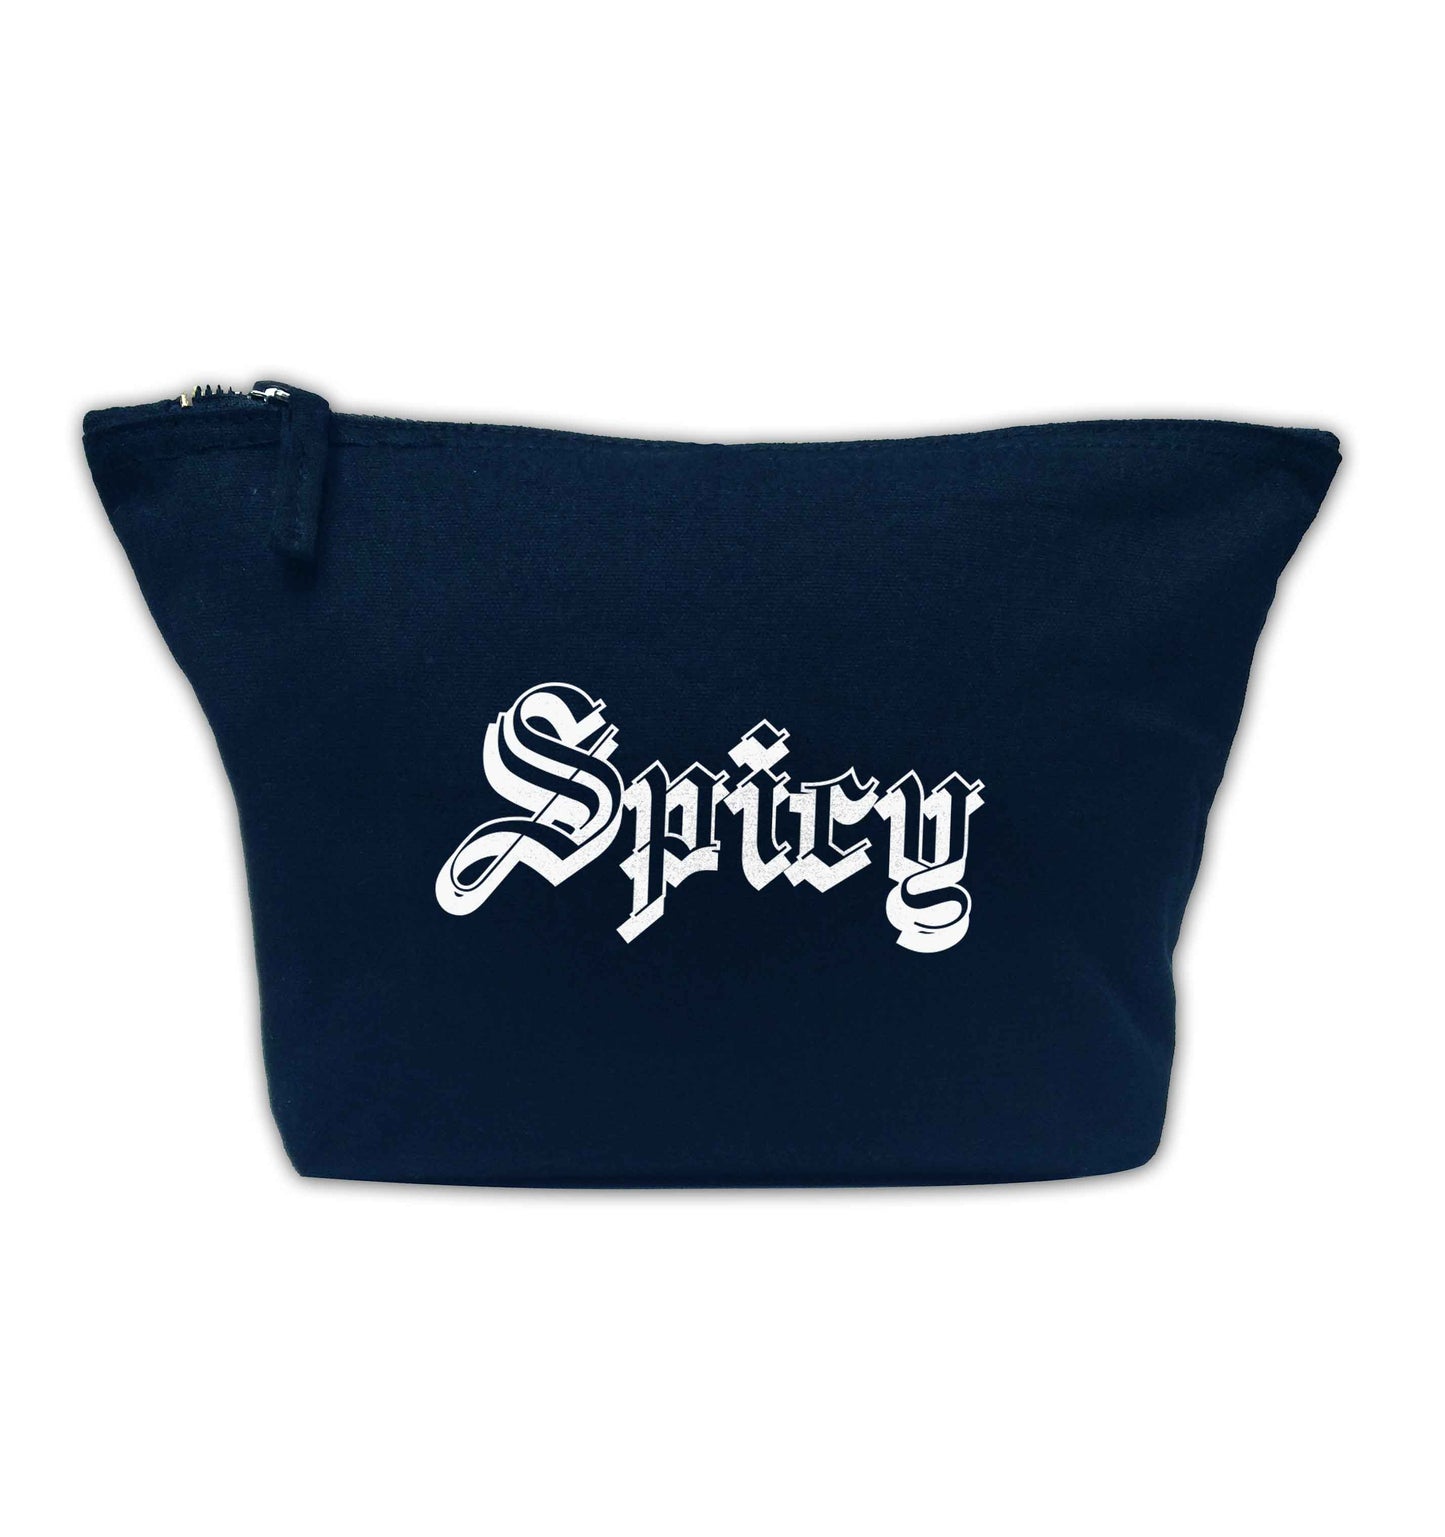 Spicy navy makeup bag